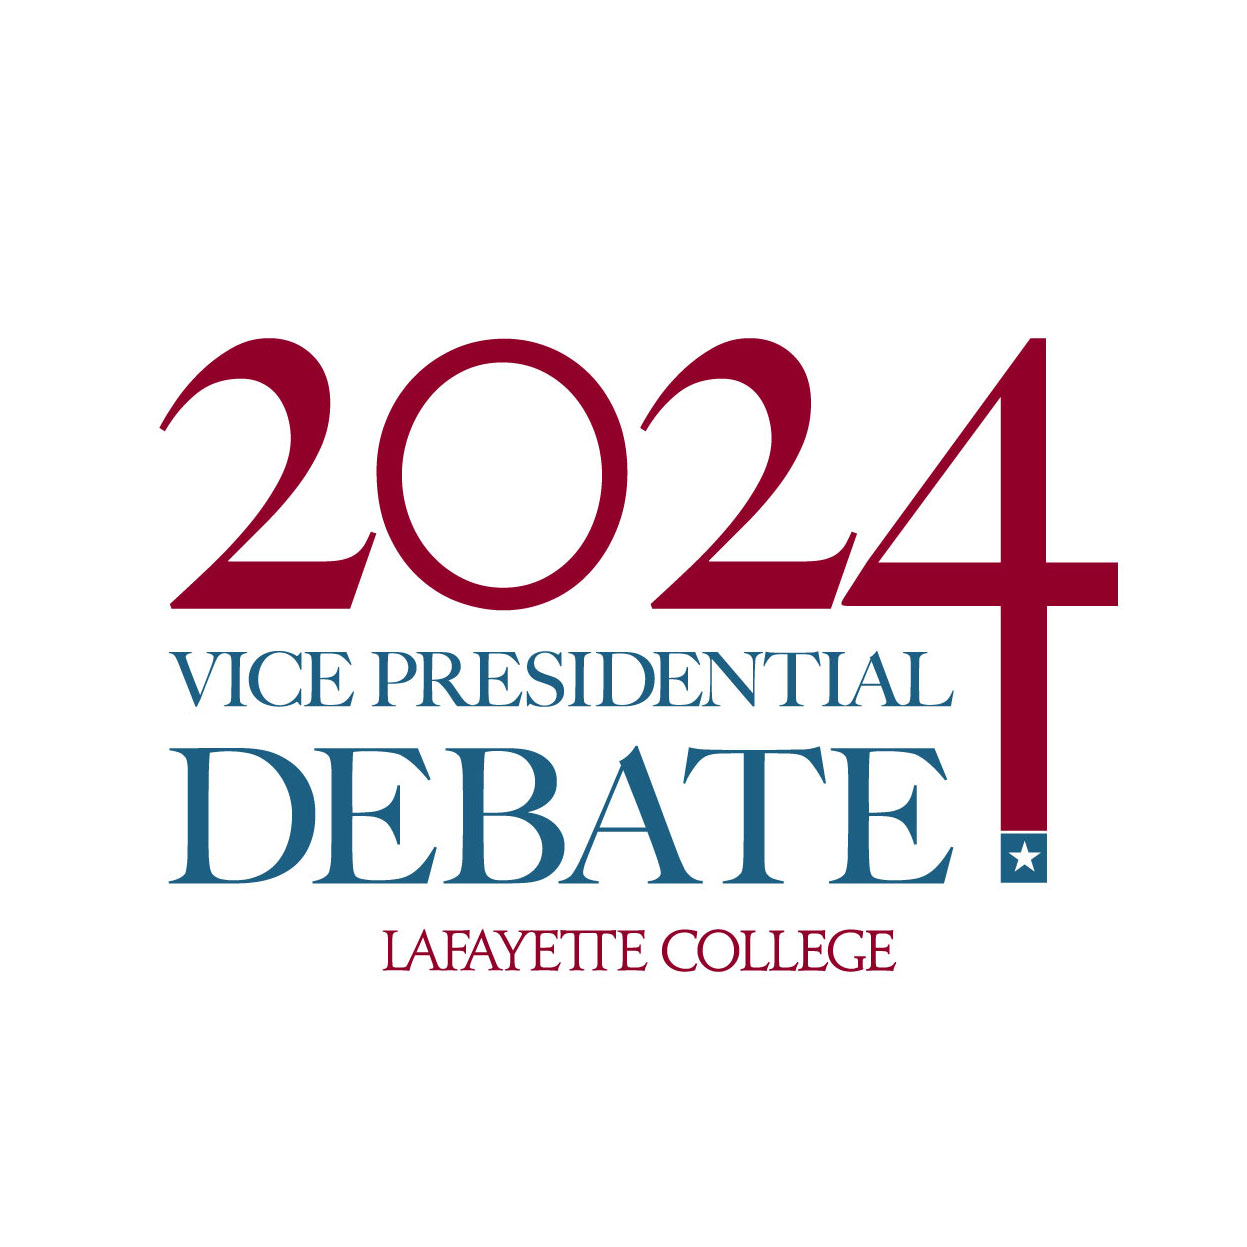 Vice Presidential Debate 2024